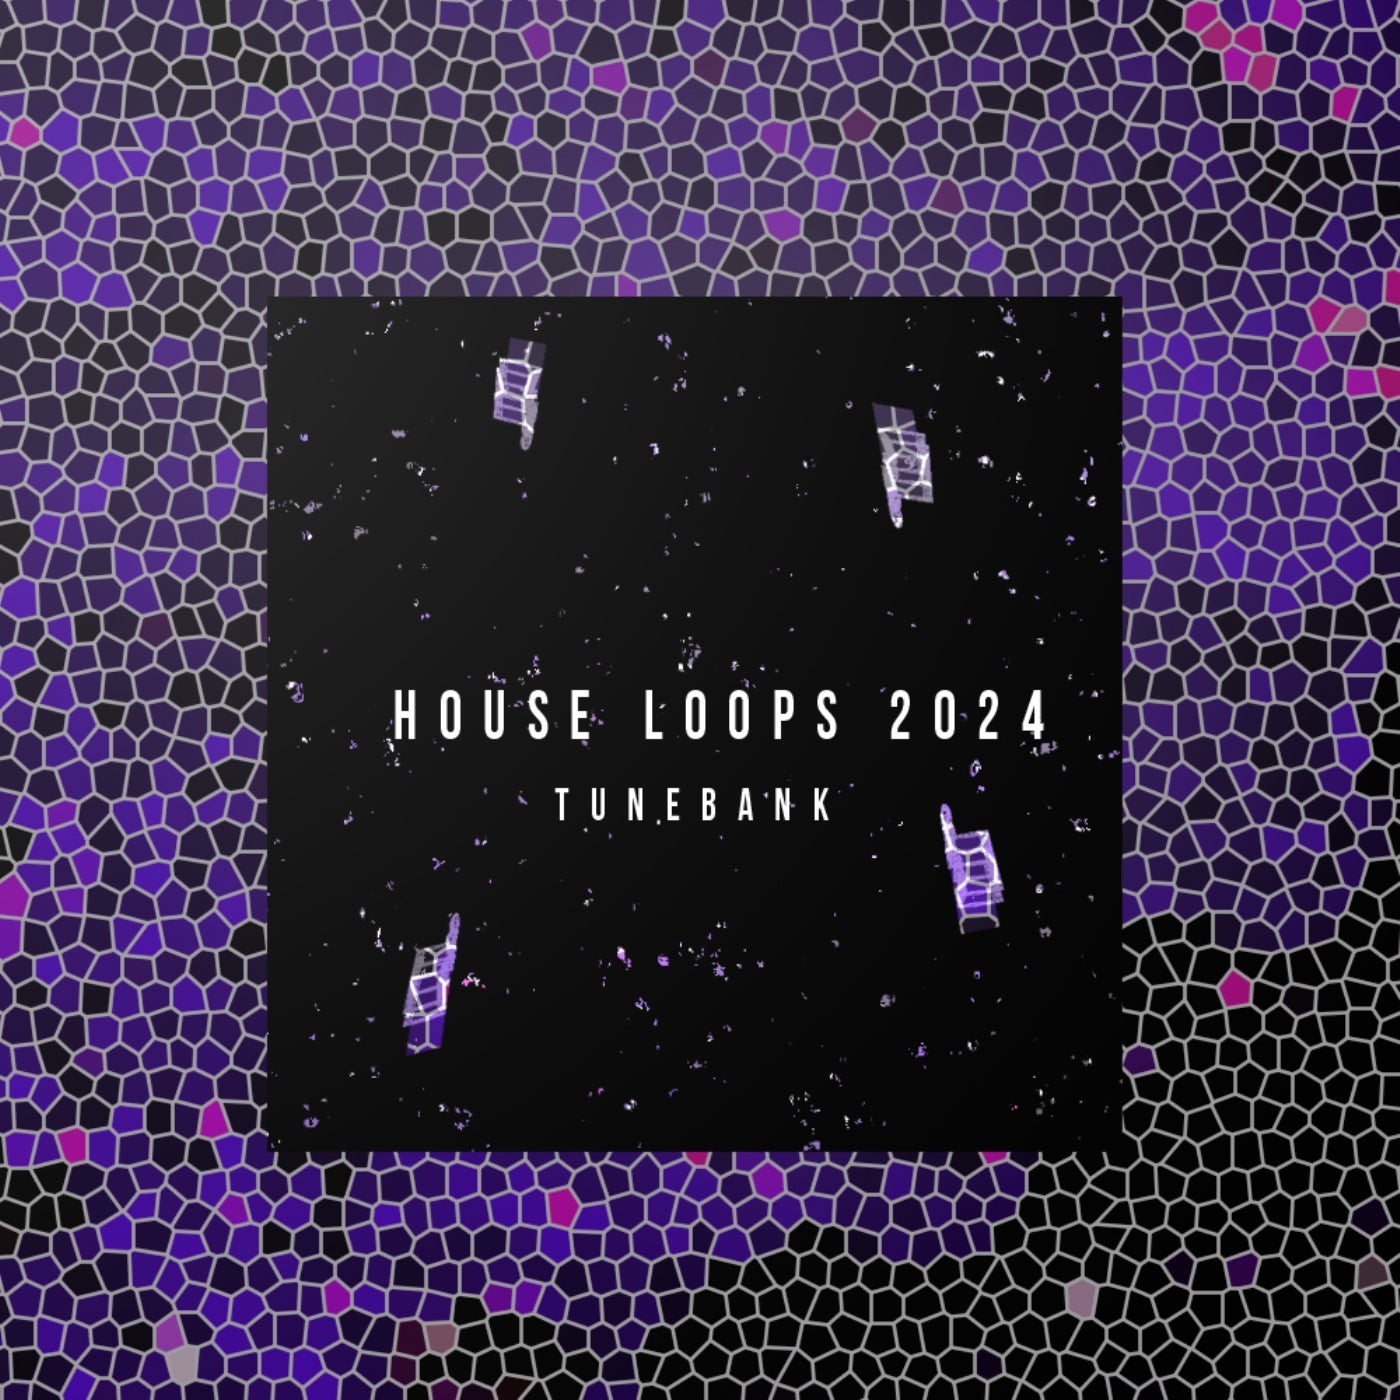 House Loops 2024